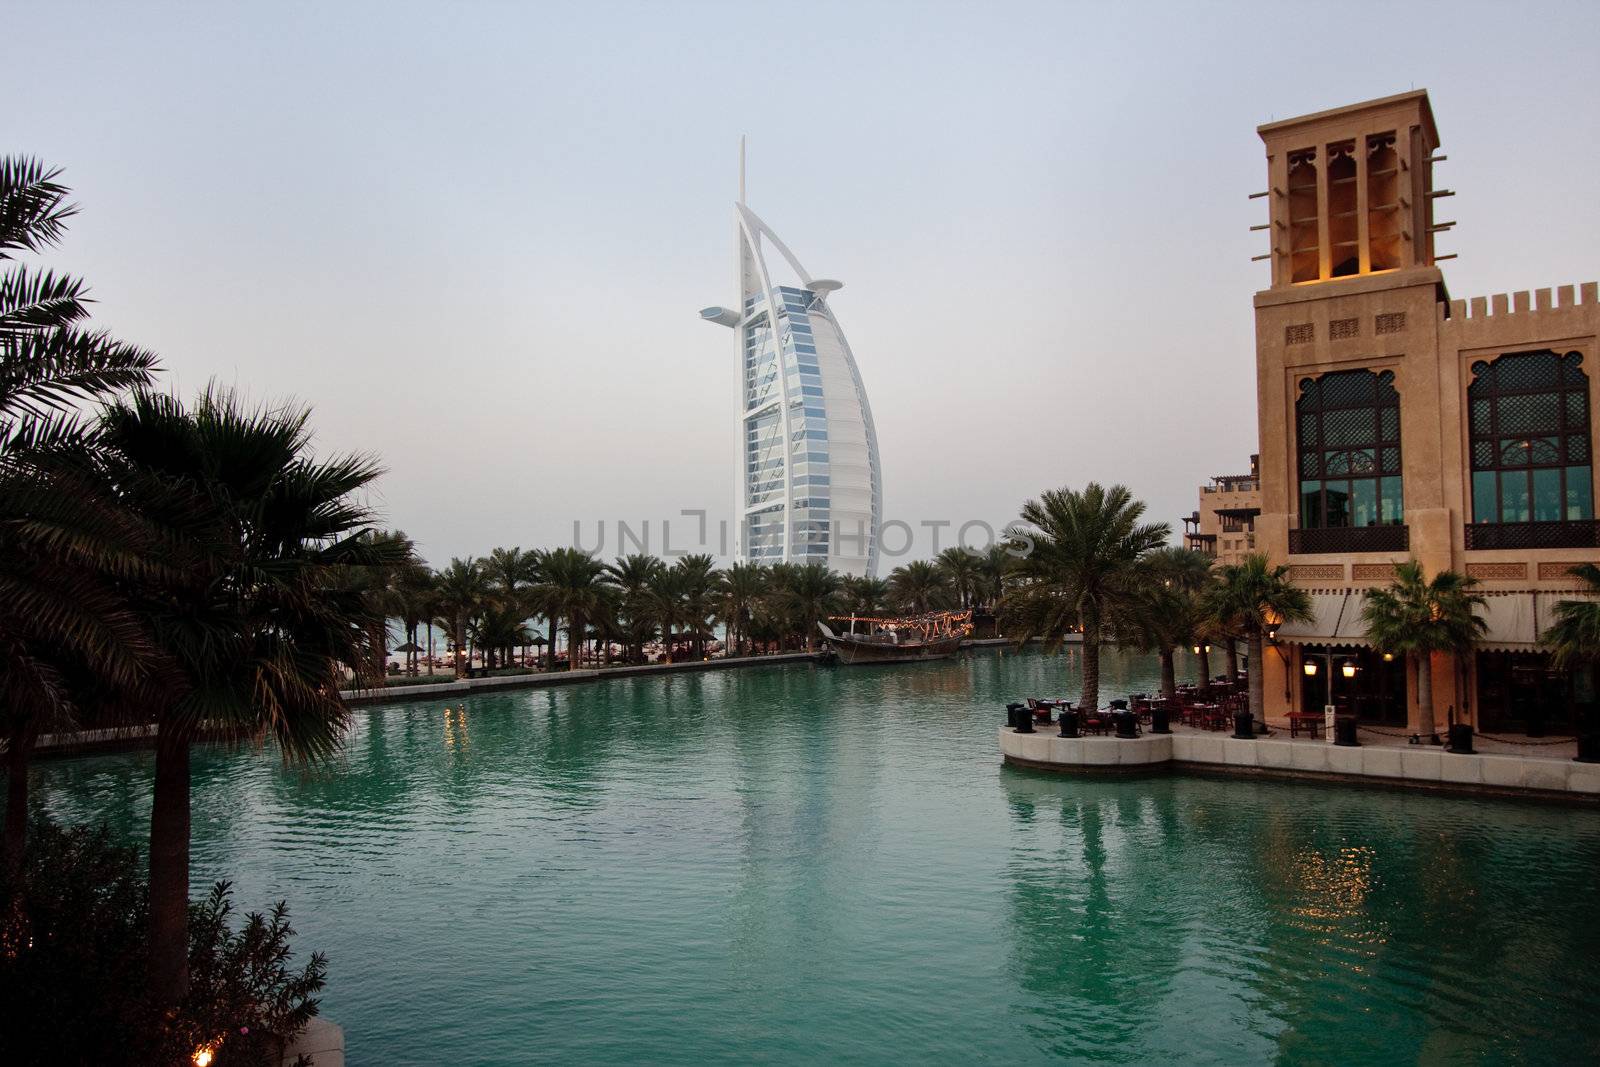 Burj al Arab reflection by steheap